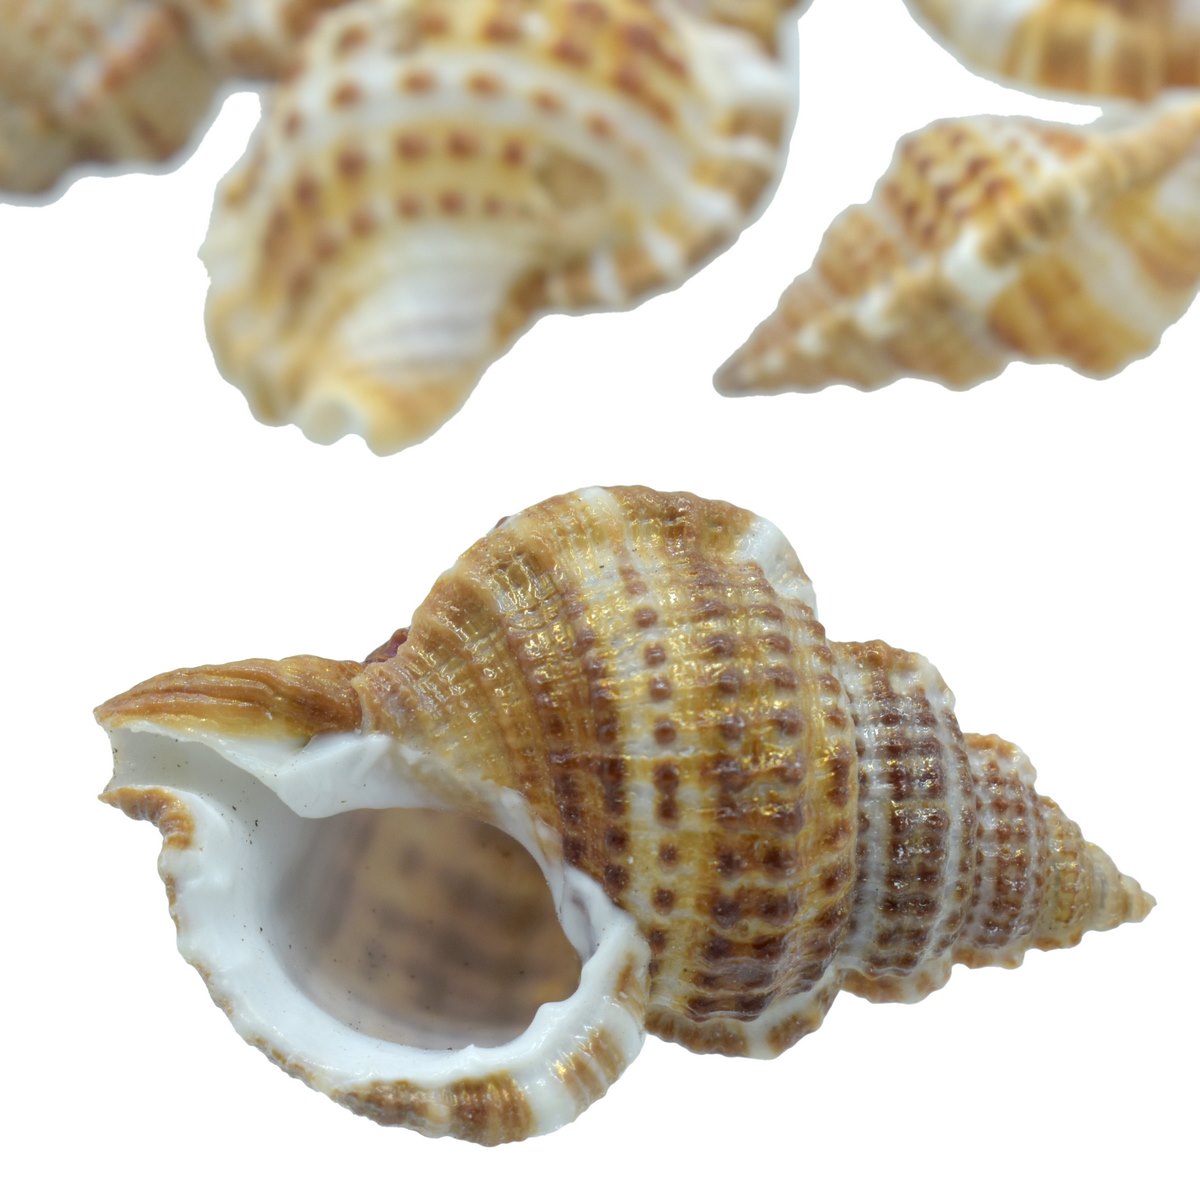 jags-mumbai Resin Small Sea Shells 50gm